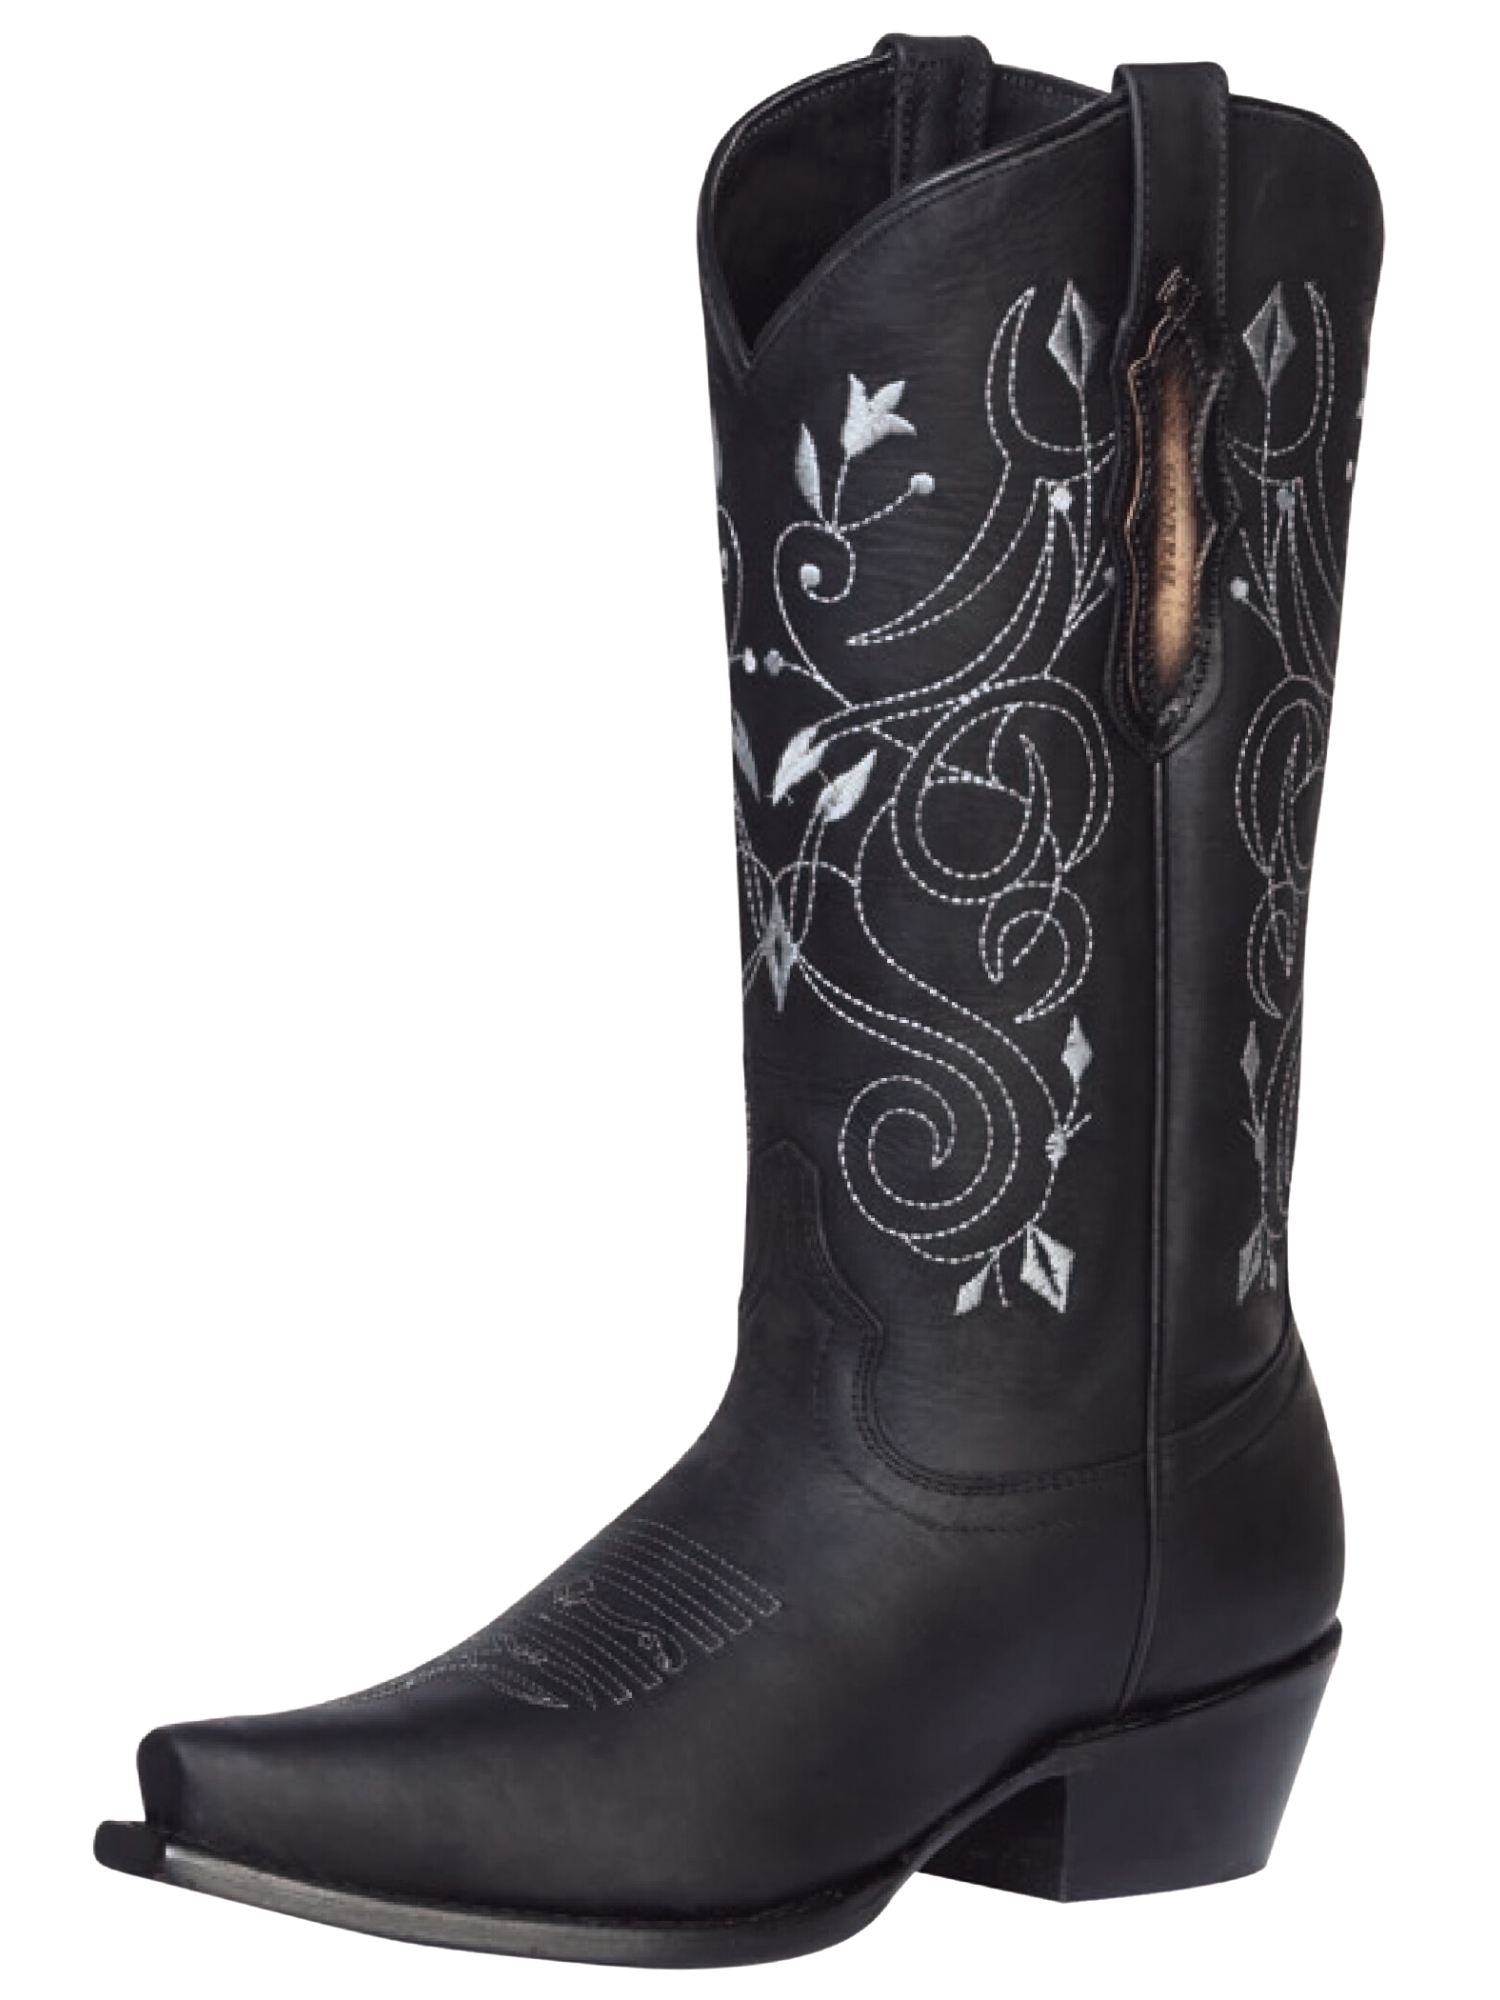 Botas Vaqueras Retro Clasicas de Piel Genuina para Mujer 'El General' - ID: 34514 Cowgirl Boots El General Negro